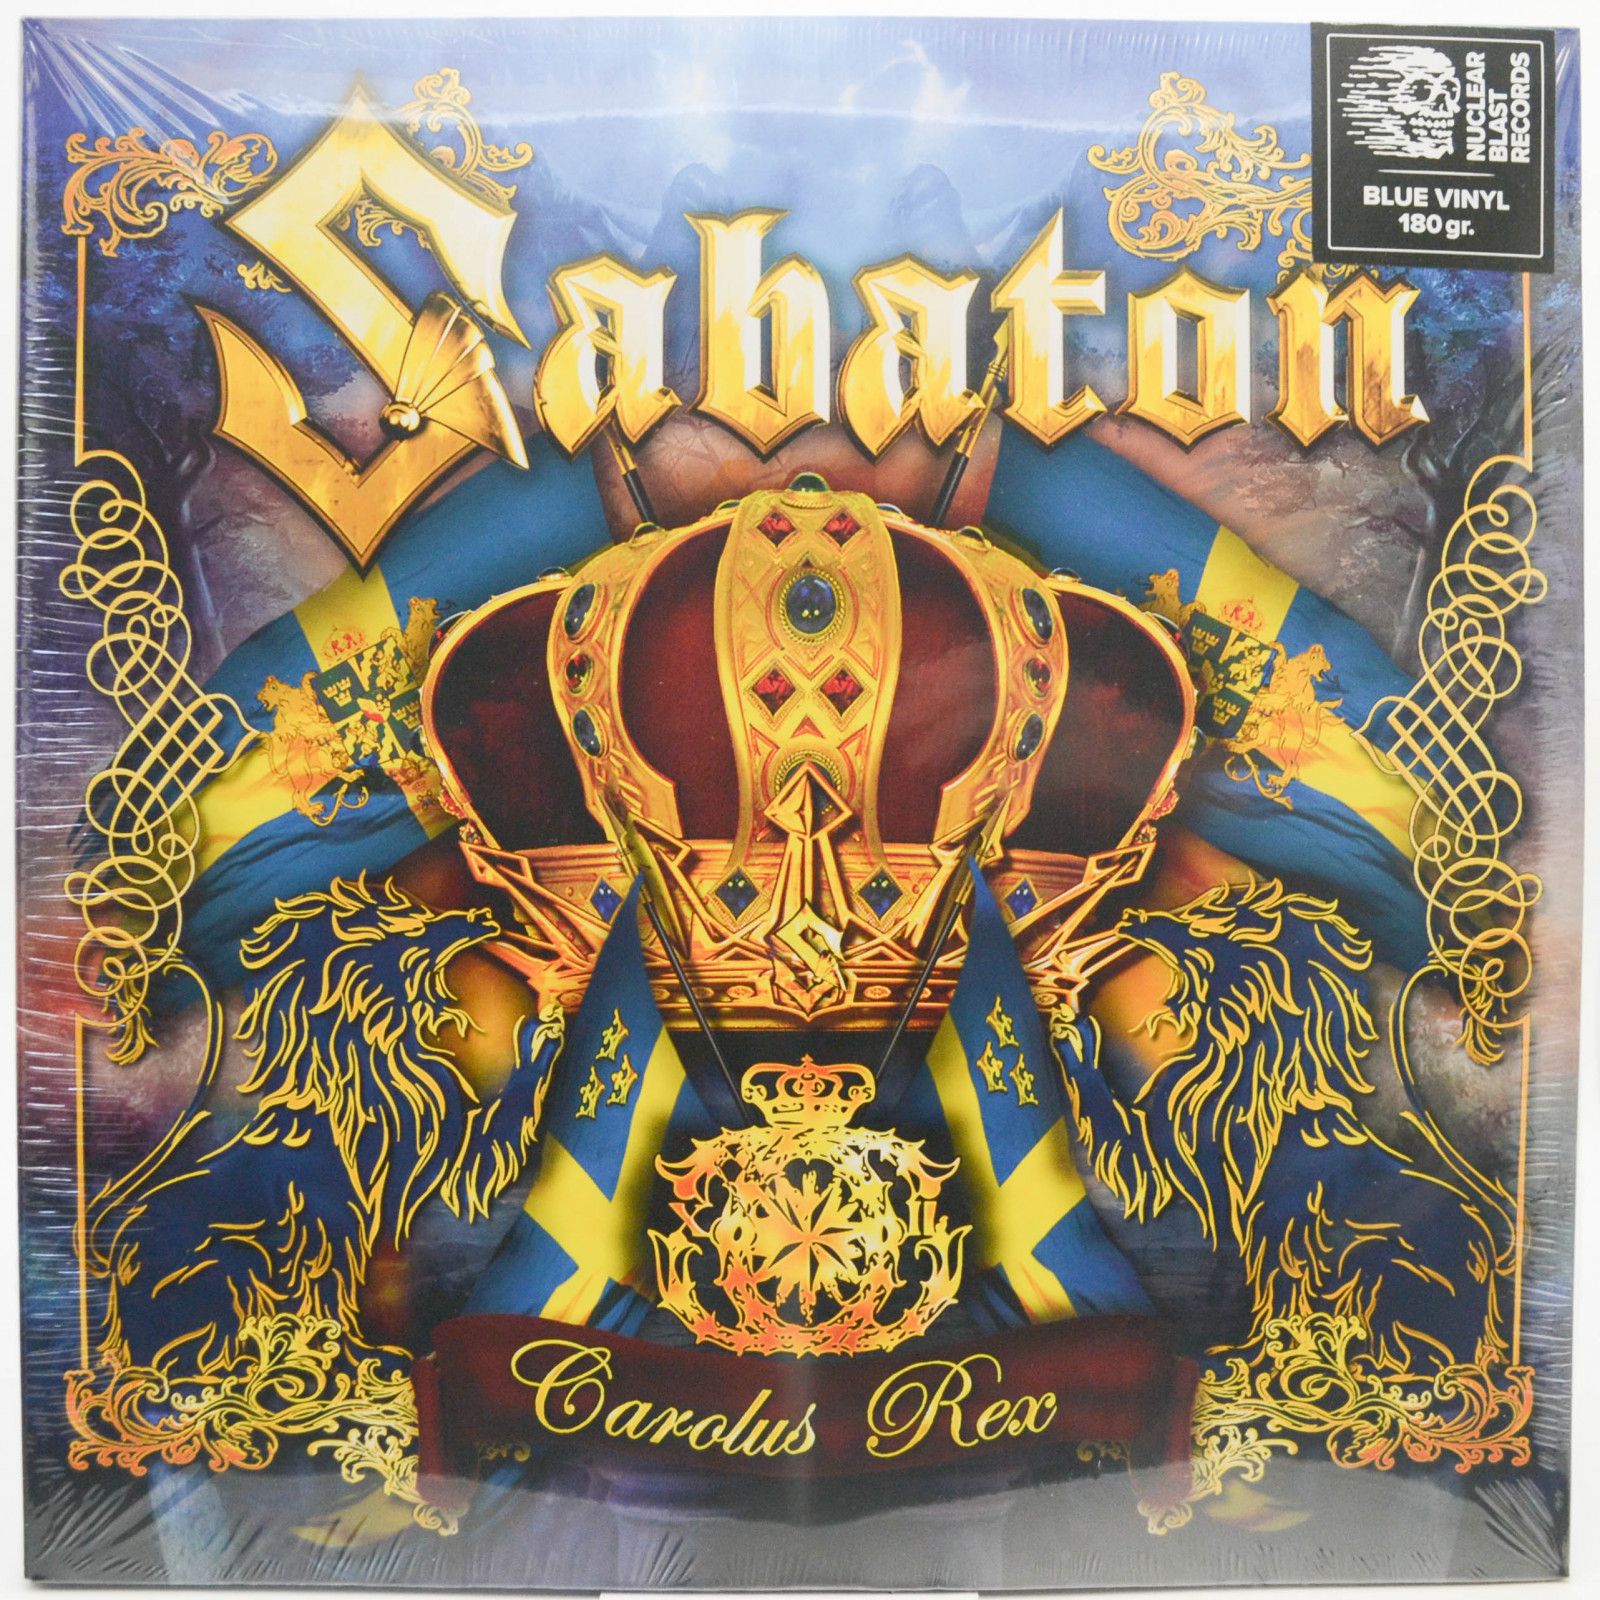 Sabaton — Carolus Rex (2LP), 2012